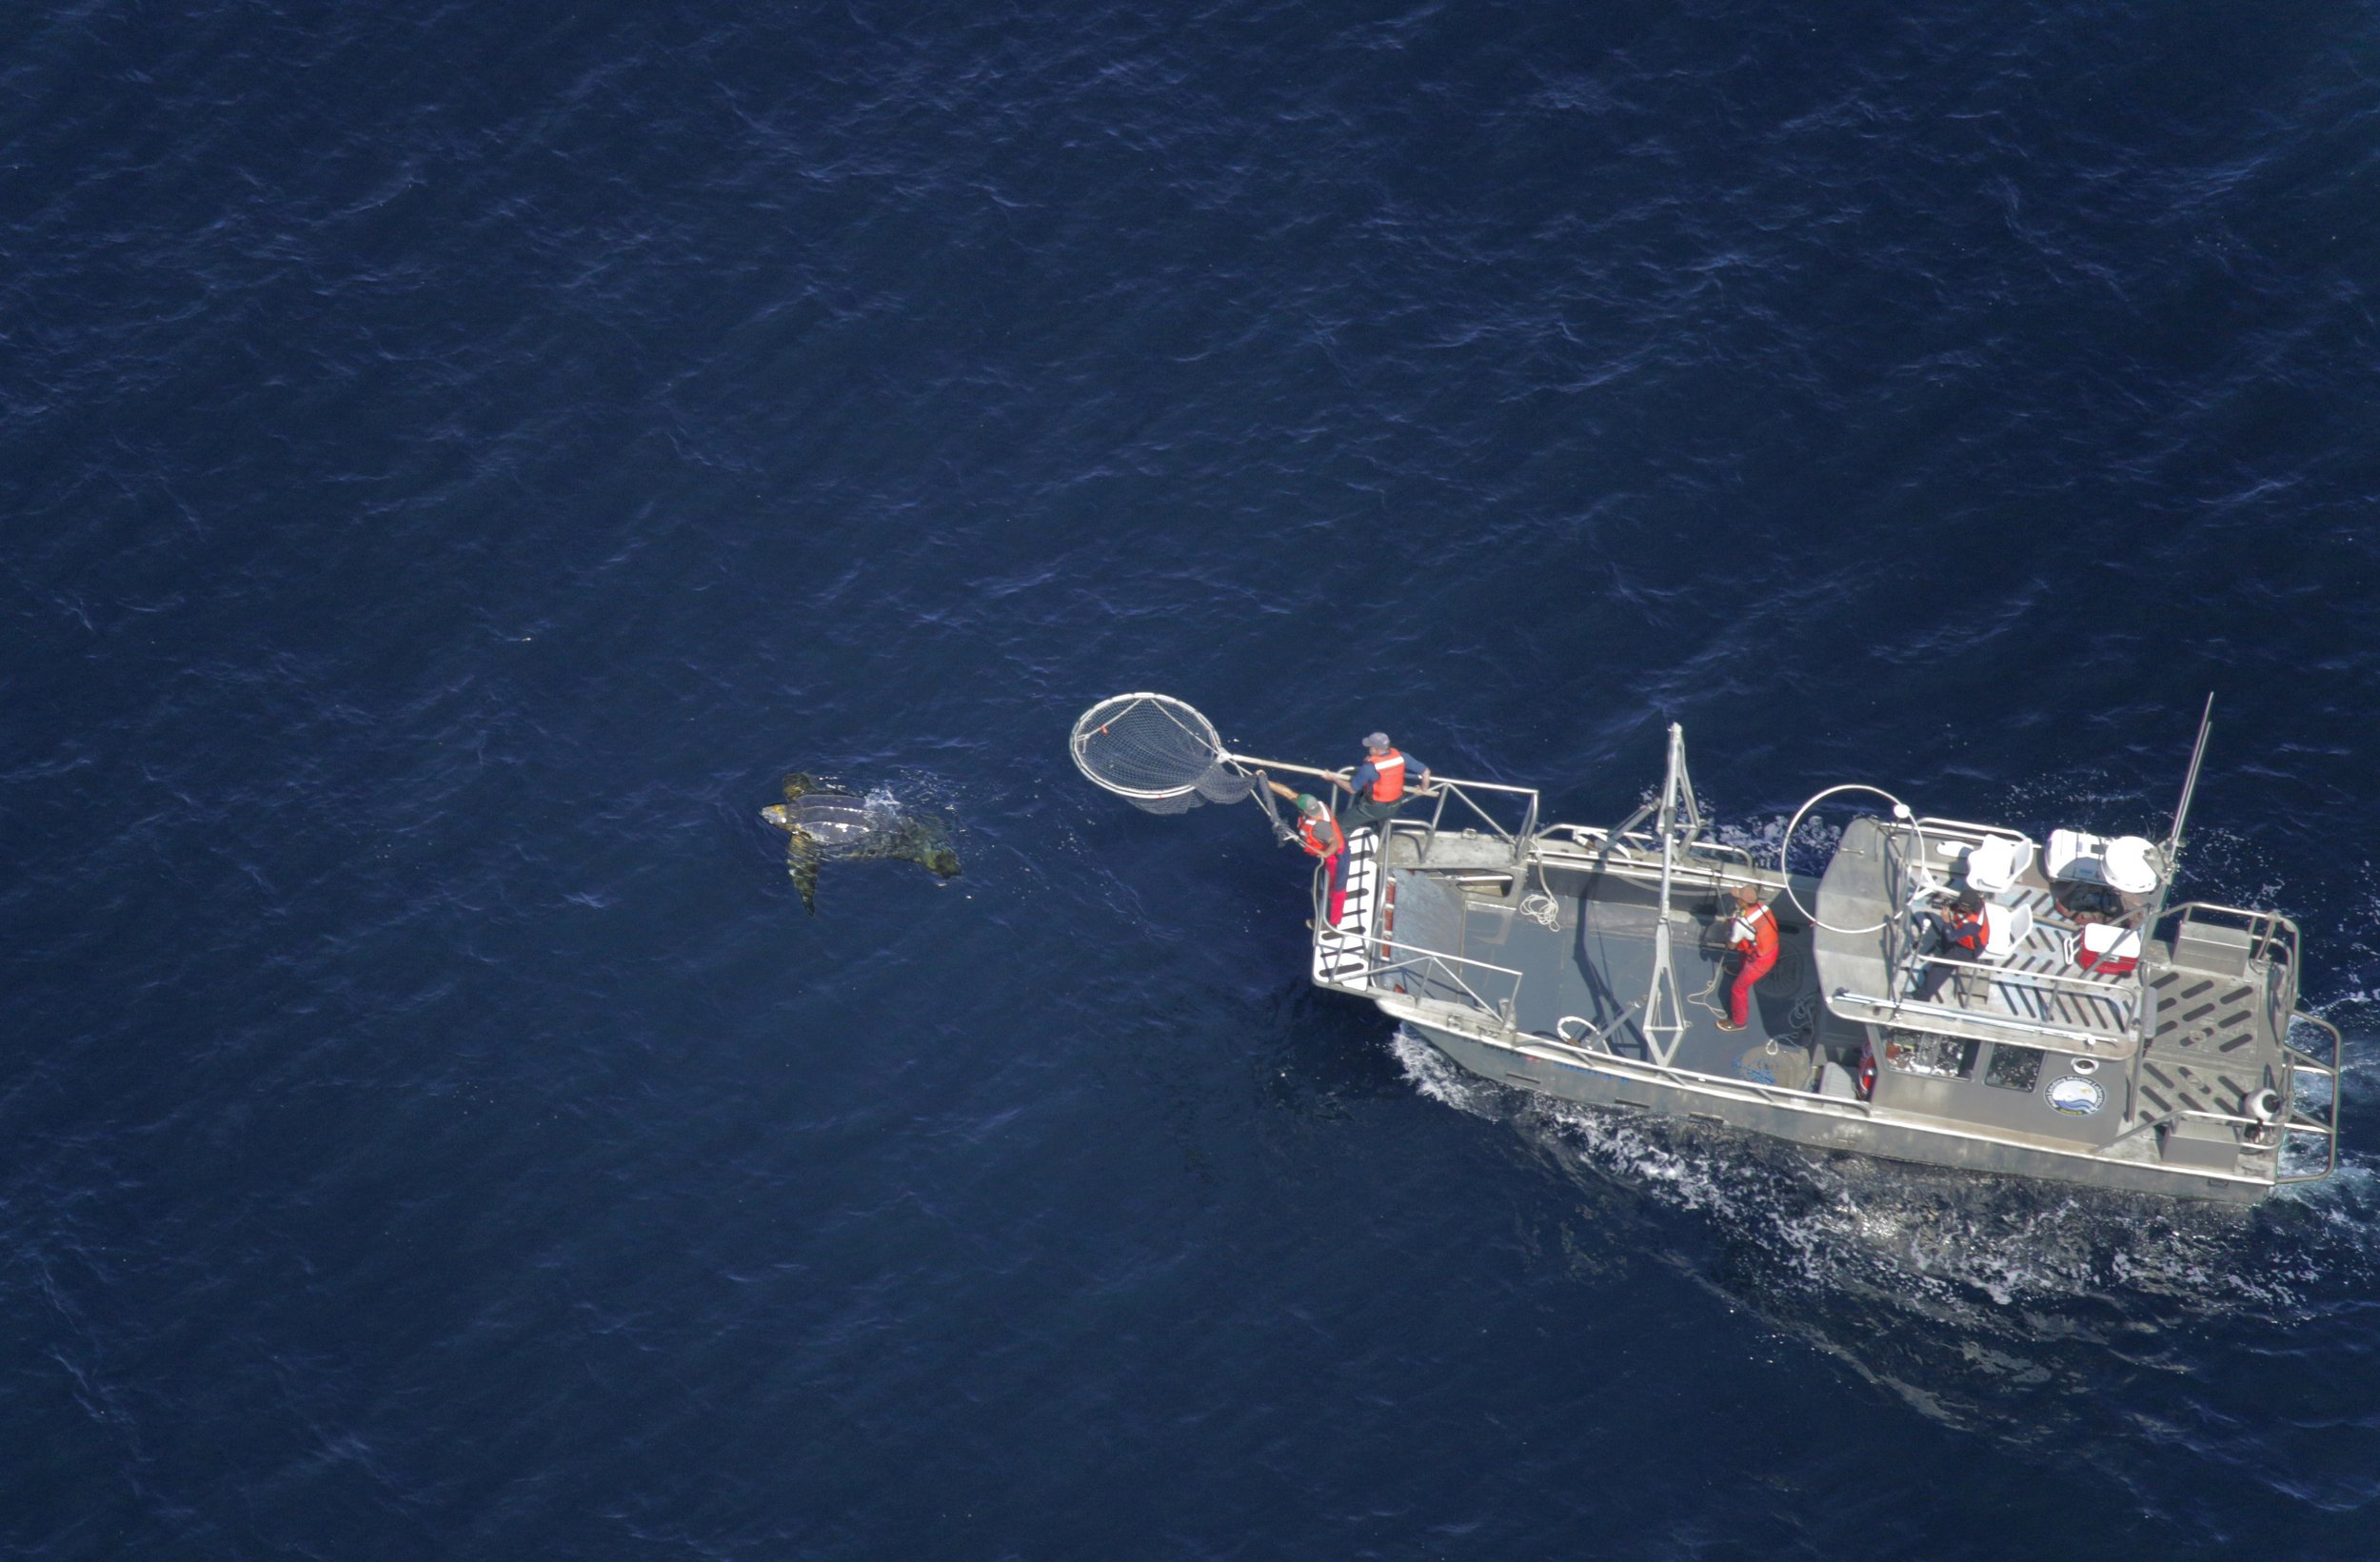 Vessel approaching a leatherback turtle, NOAA-ESA Permit 21111